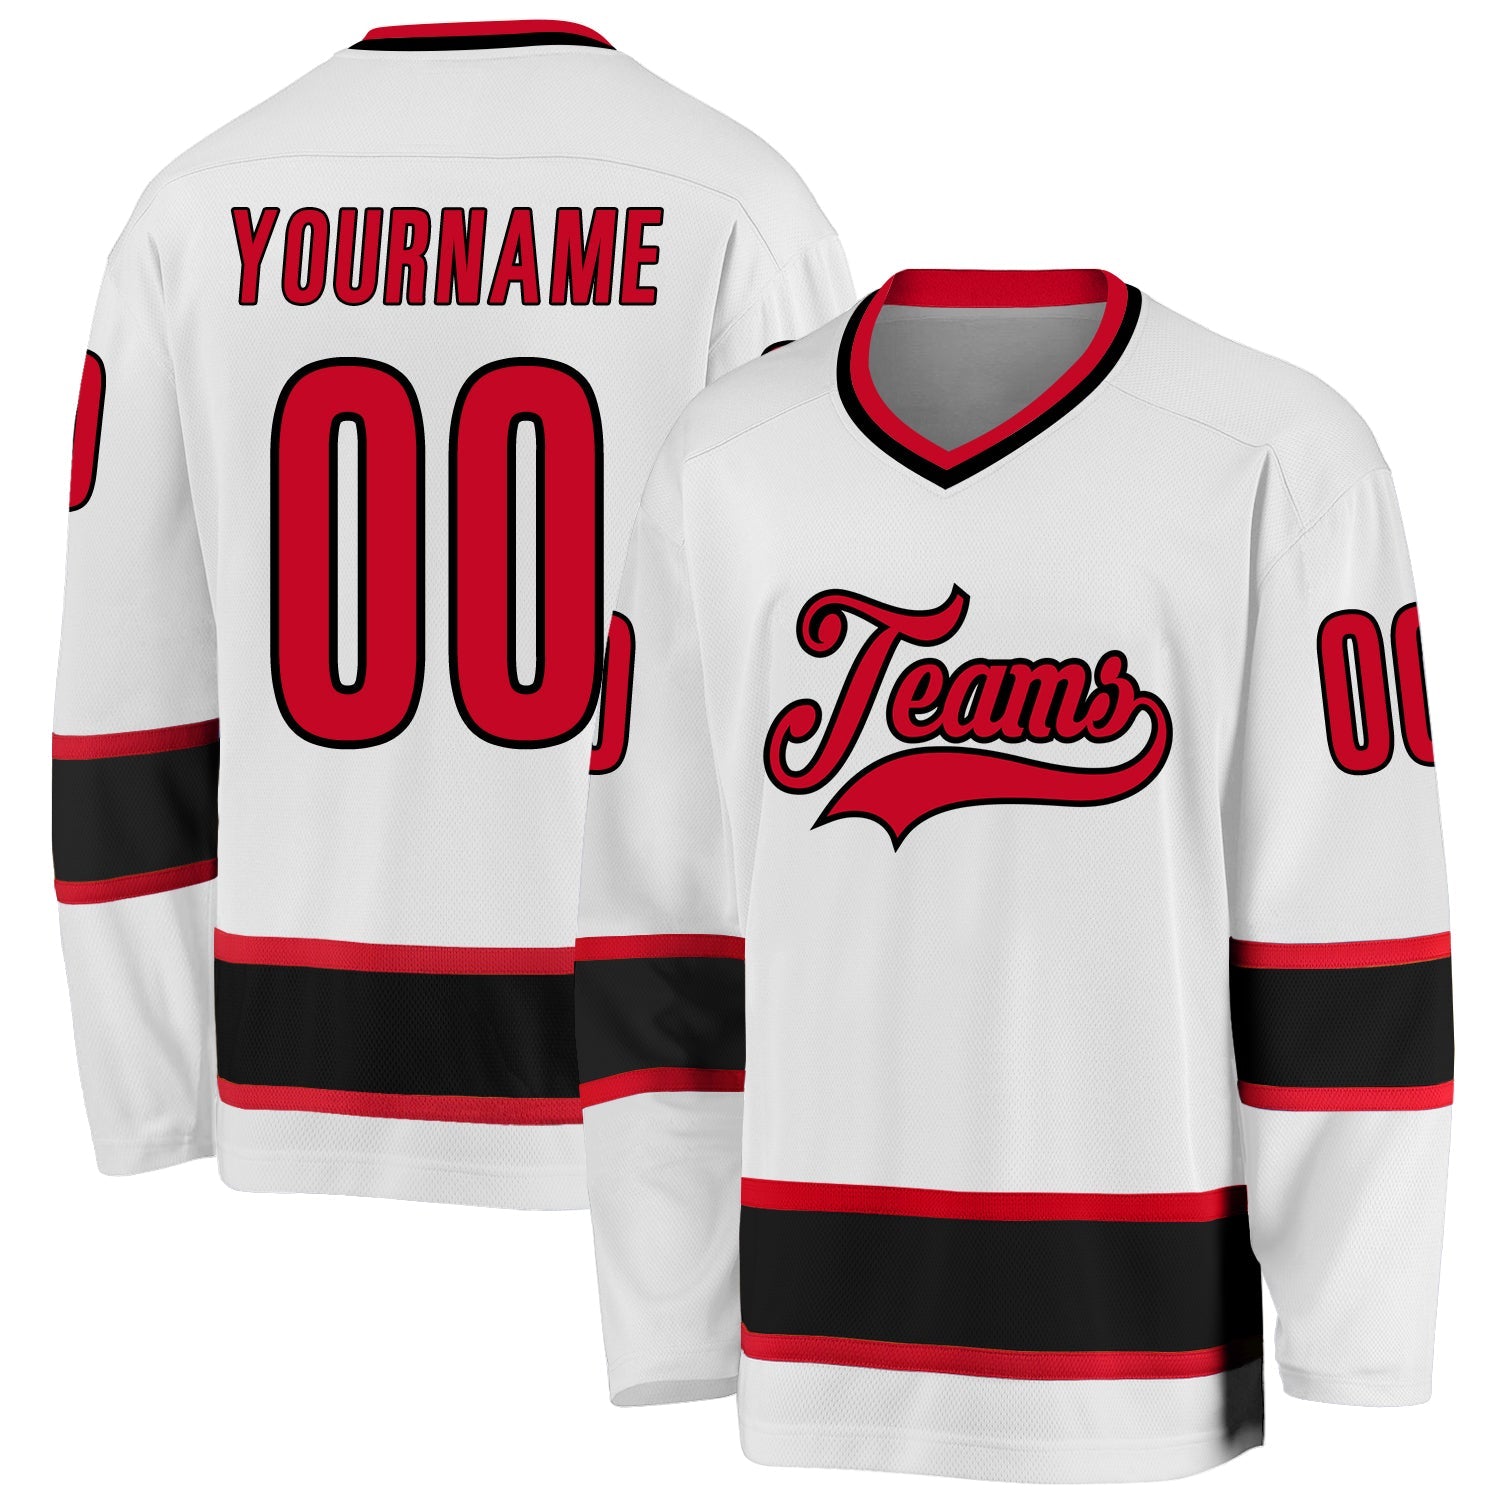 Jersey de hockey rojo-negro blanco personalizado